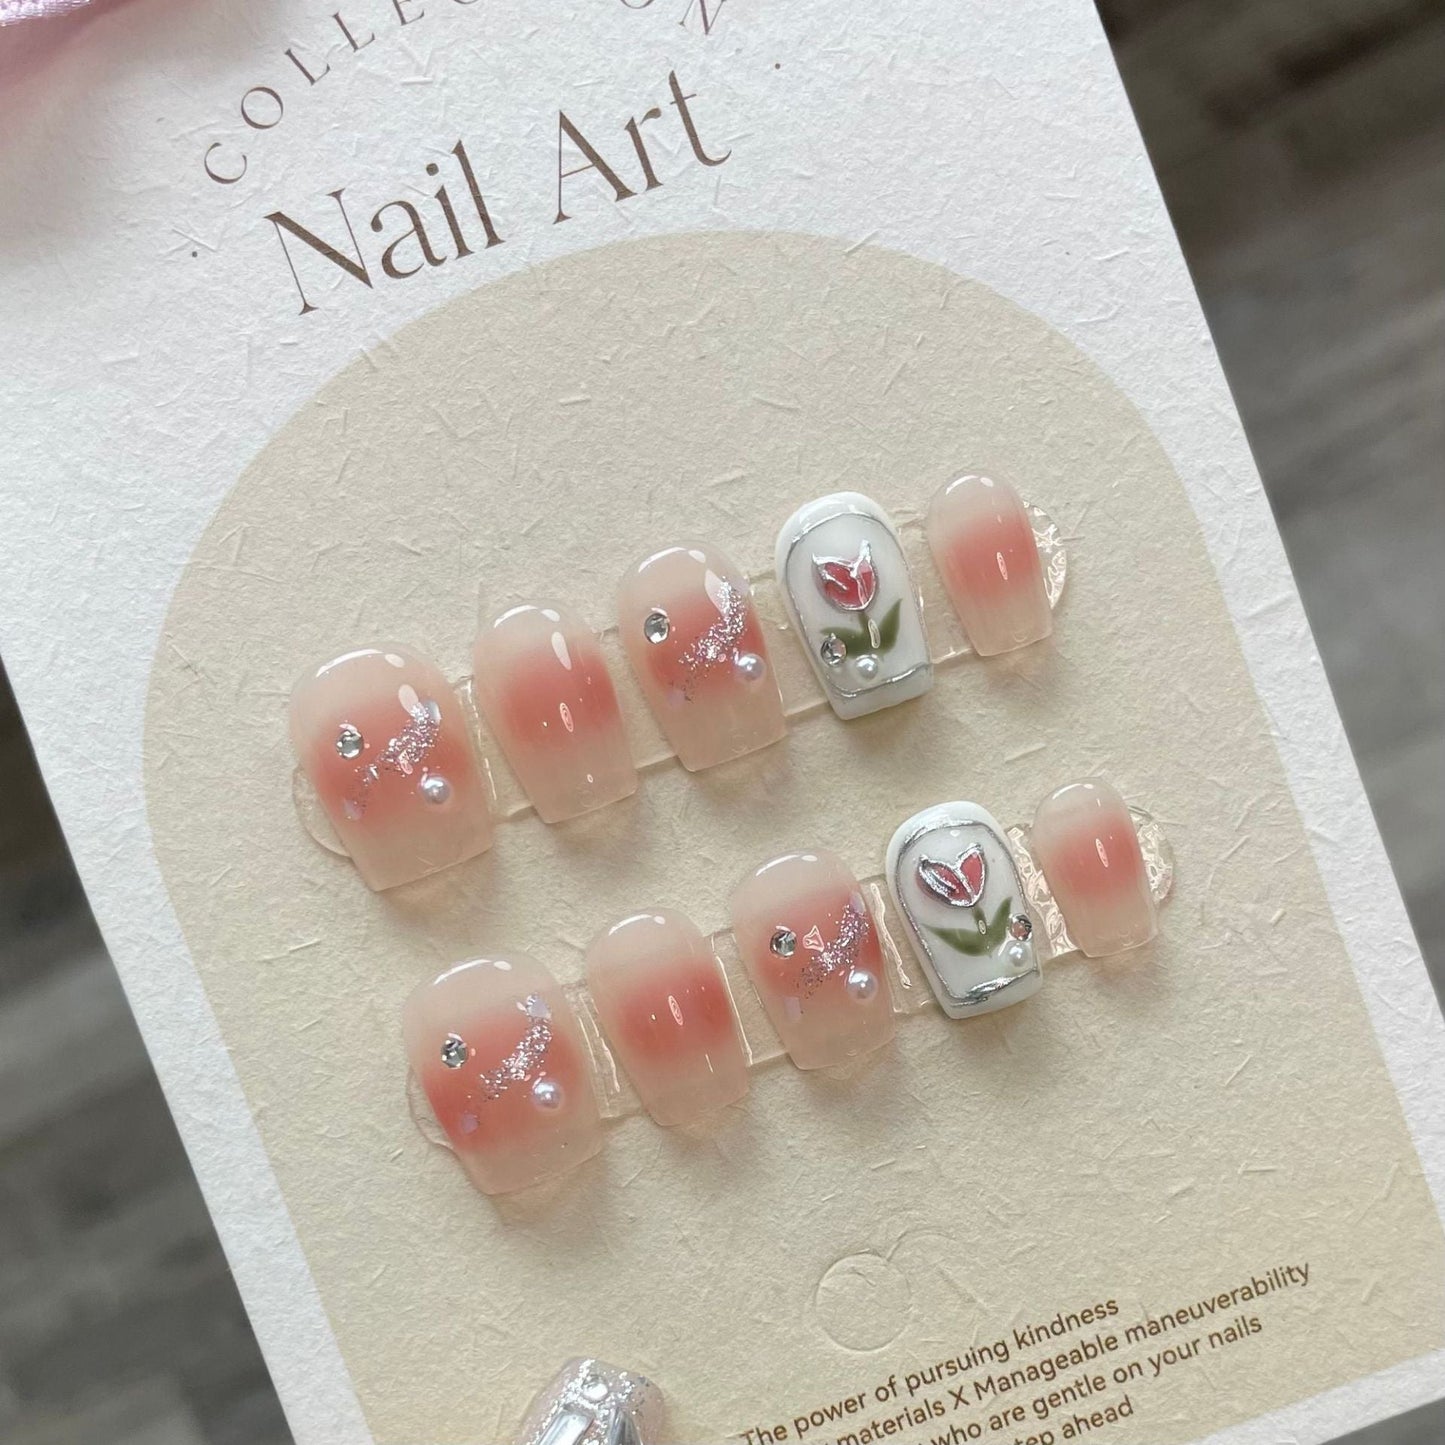 716 Presse de style tulipe romantique sur les ongles 100% faux ongles faits à la main rose blanc